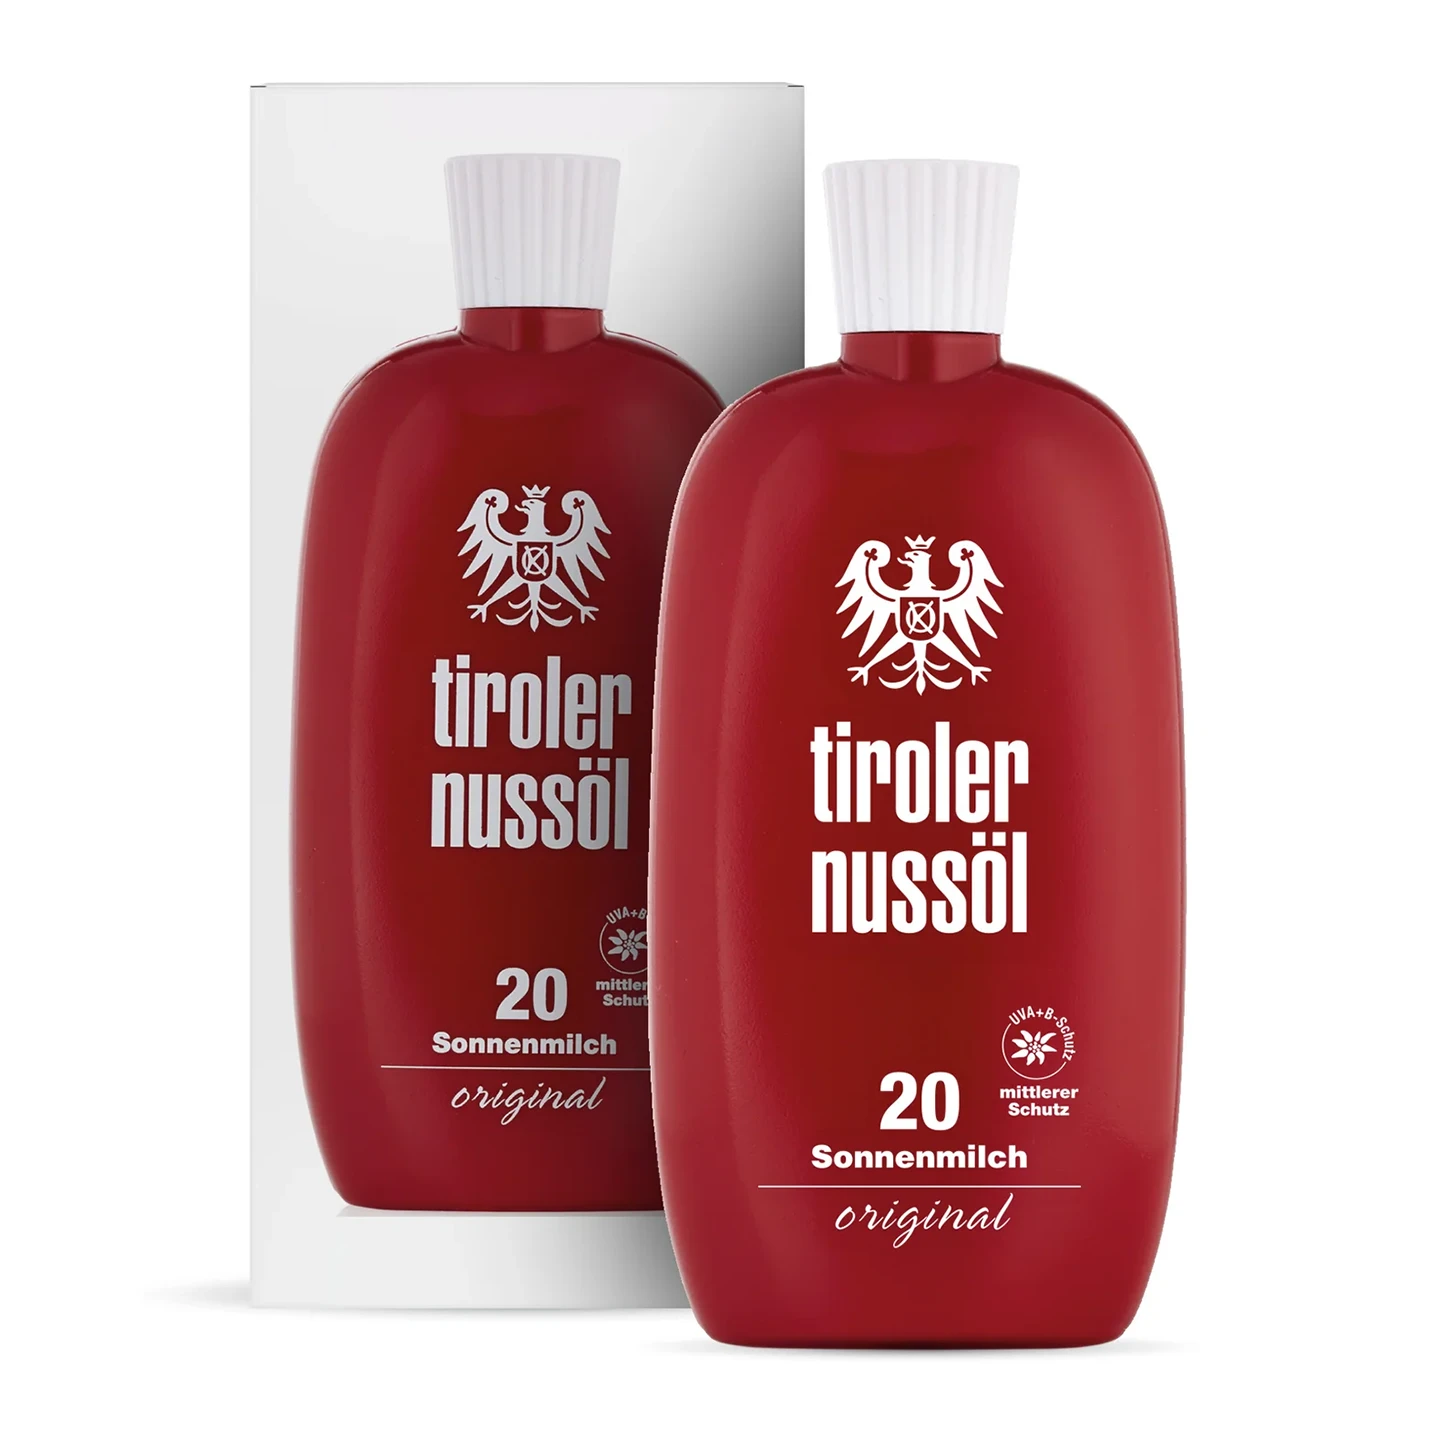 Tiroler Nussöl Original Sonnenmilch Lichtschutzfaktor 20 – Tube und Verpackung Vorderansicht